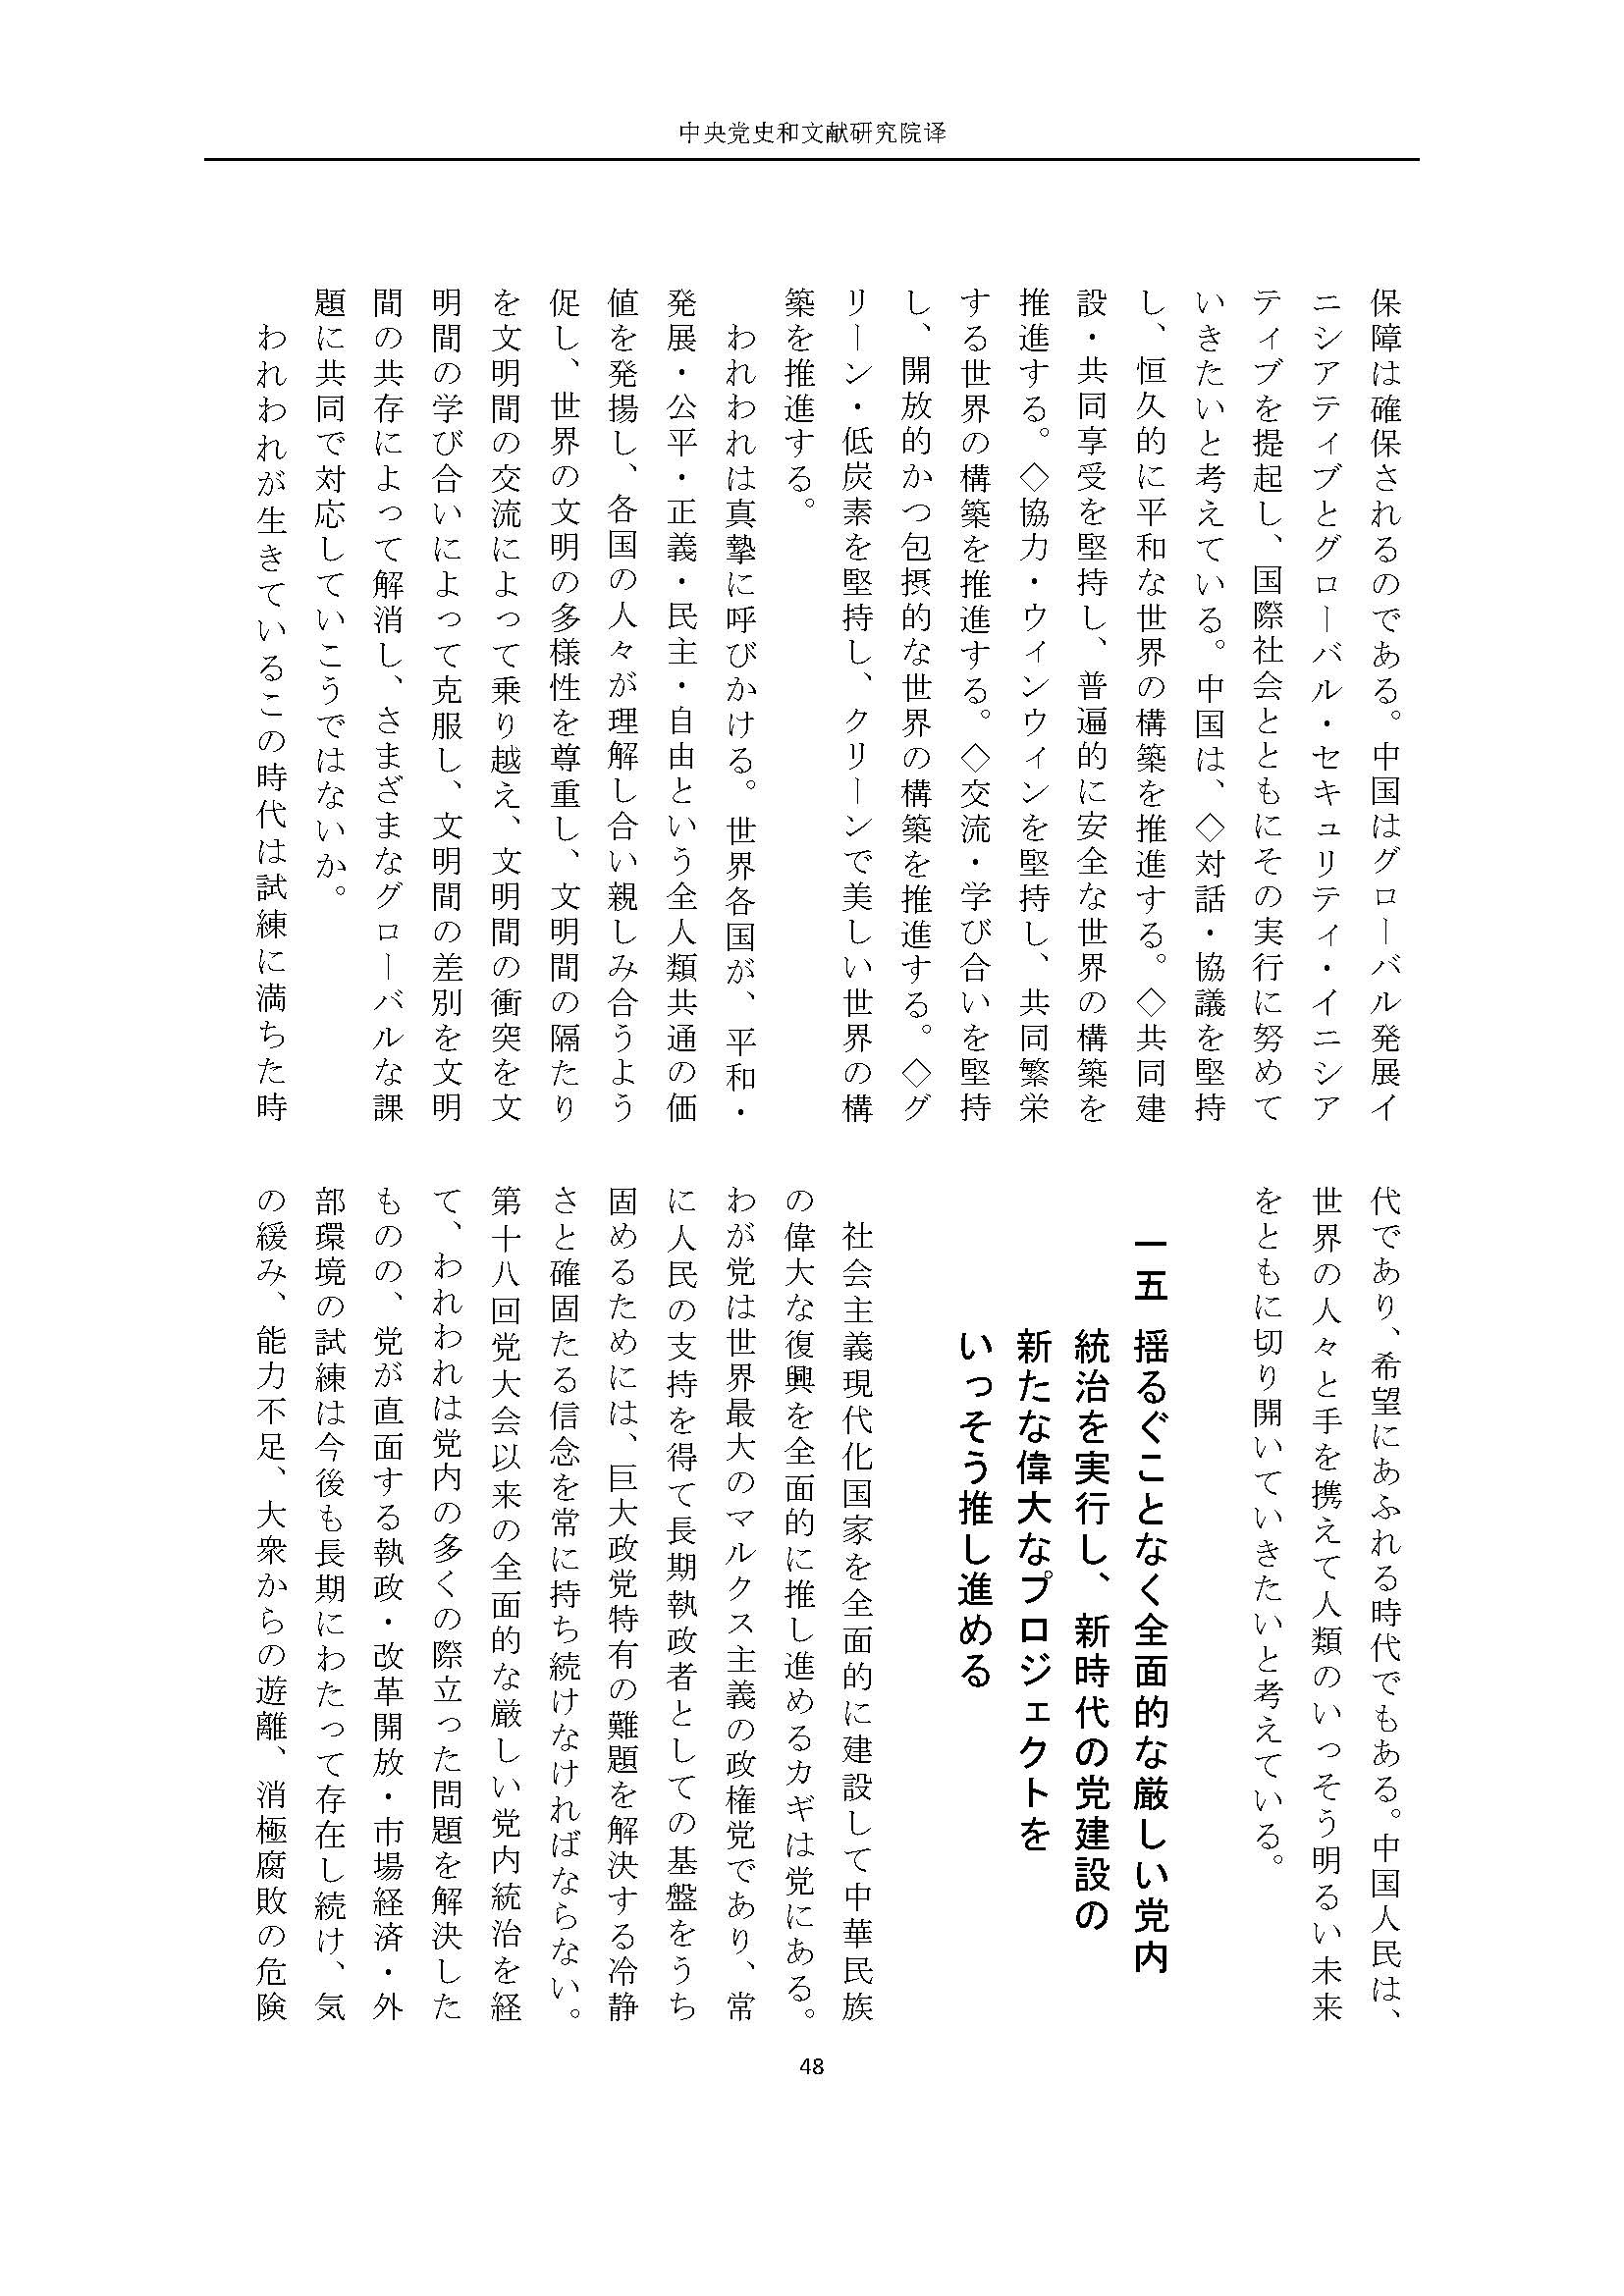 二十大报告（日文全文）_页面_49